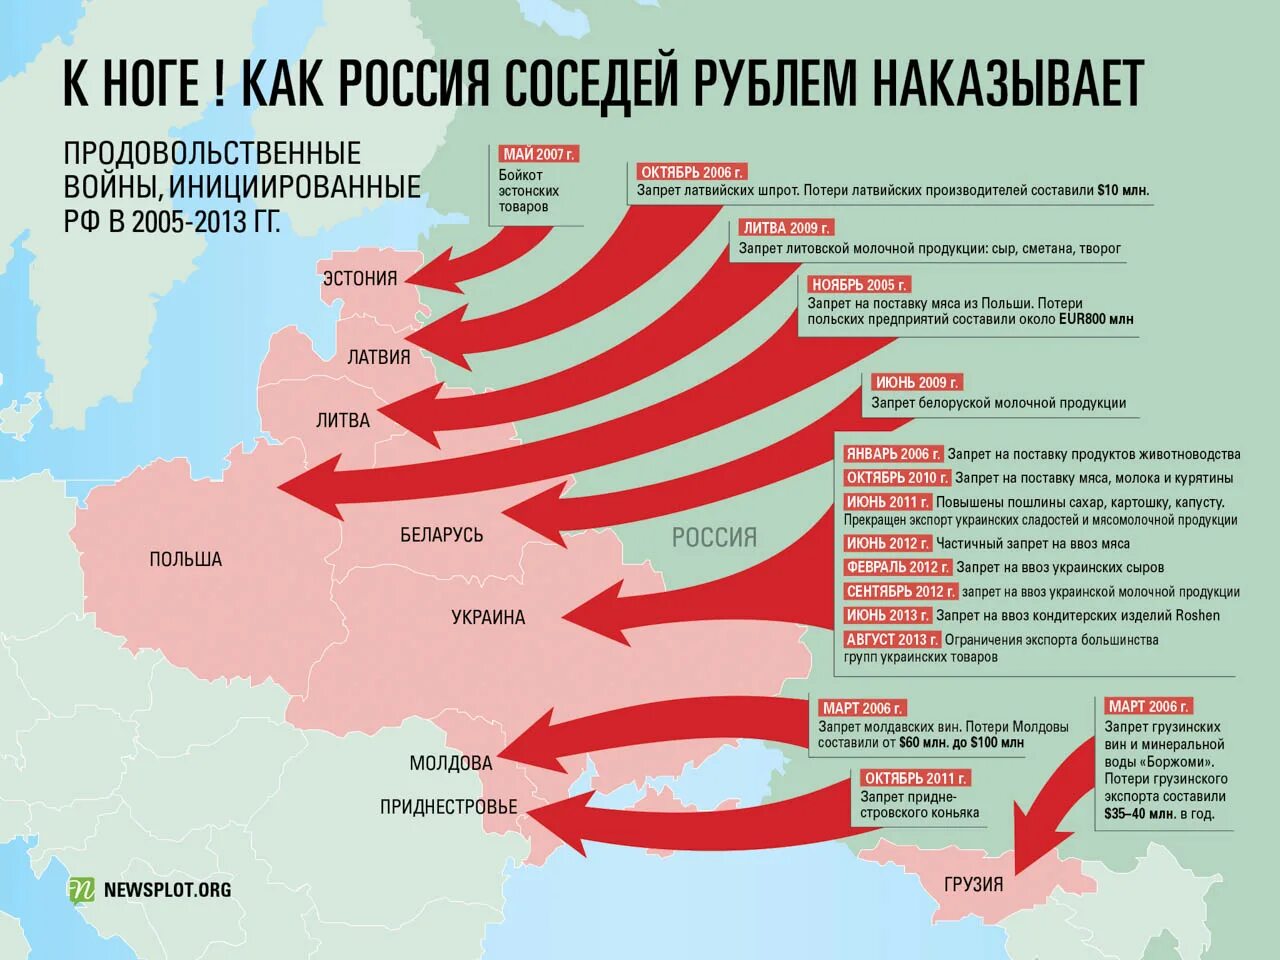 Нападение потери. План вторжения на Украину. Карта вайна Росси в Украину. Стары которые воюют с Украиной. Государство, с которым воевала Россия.